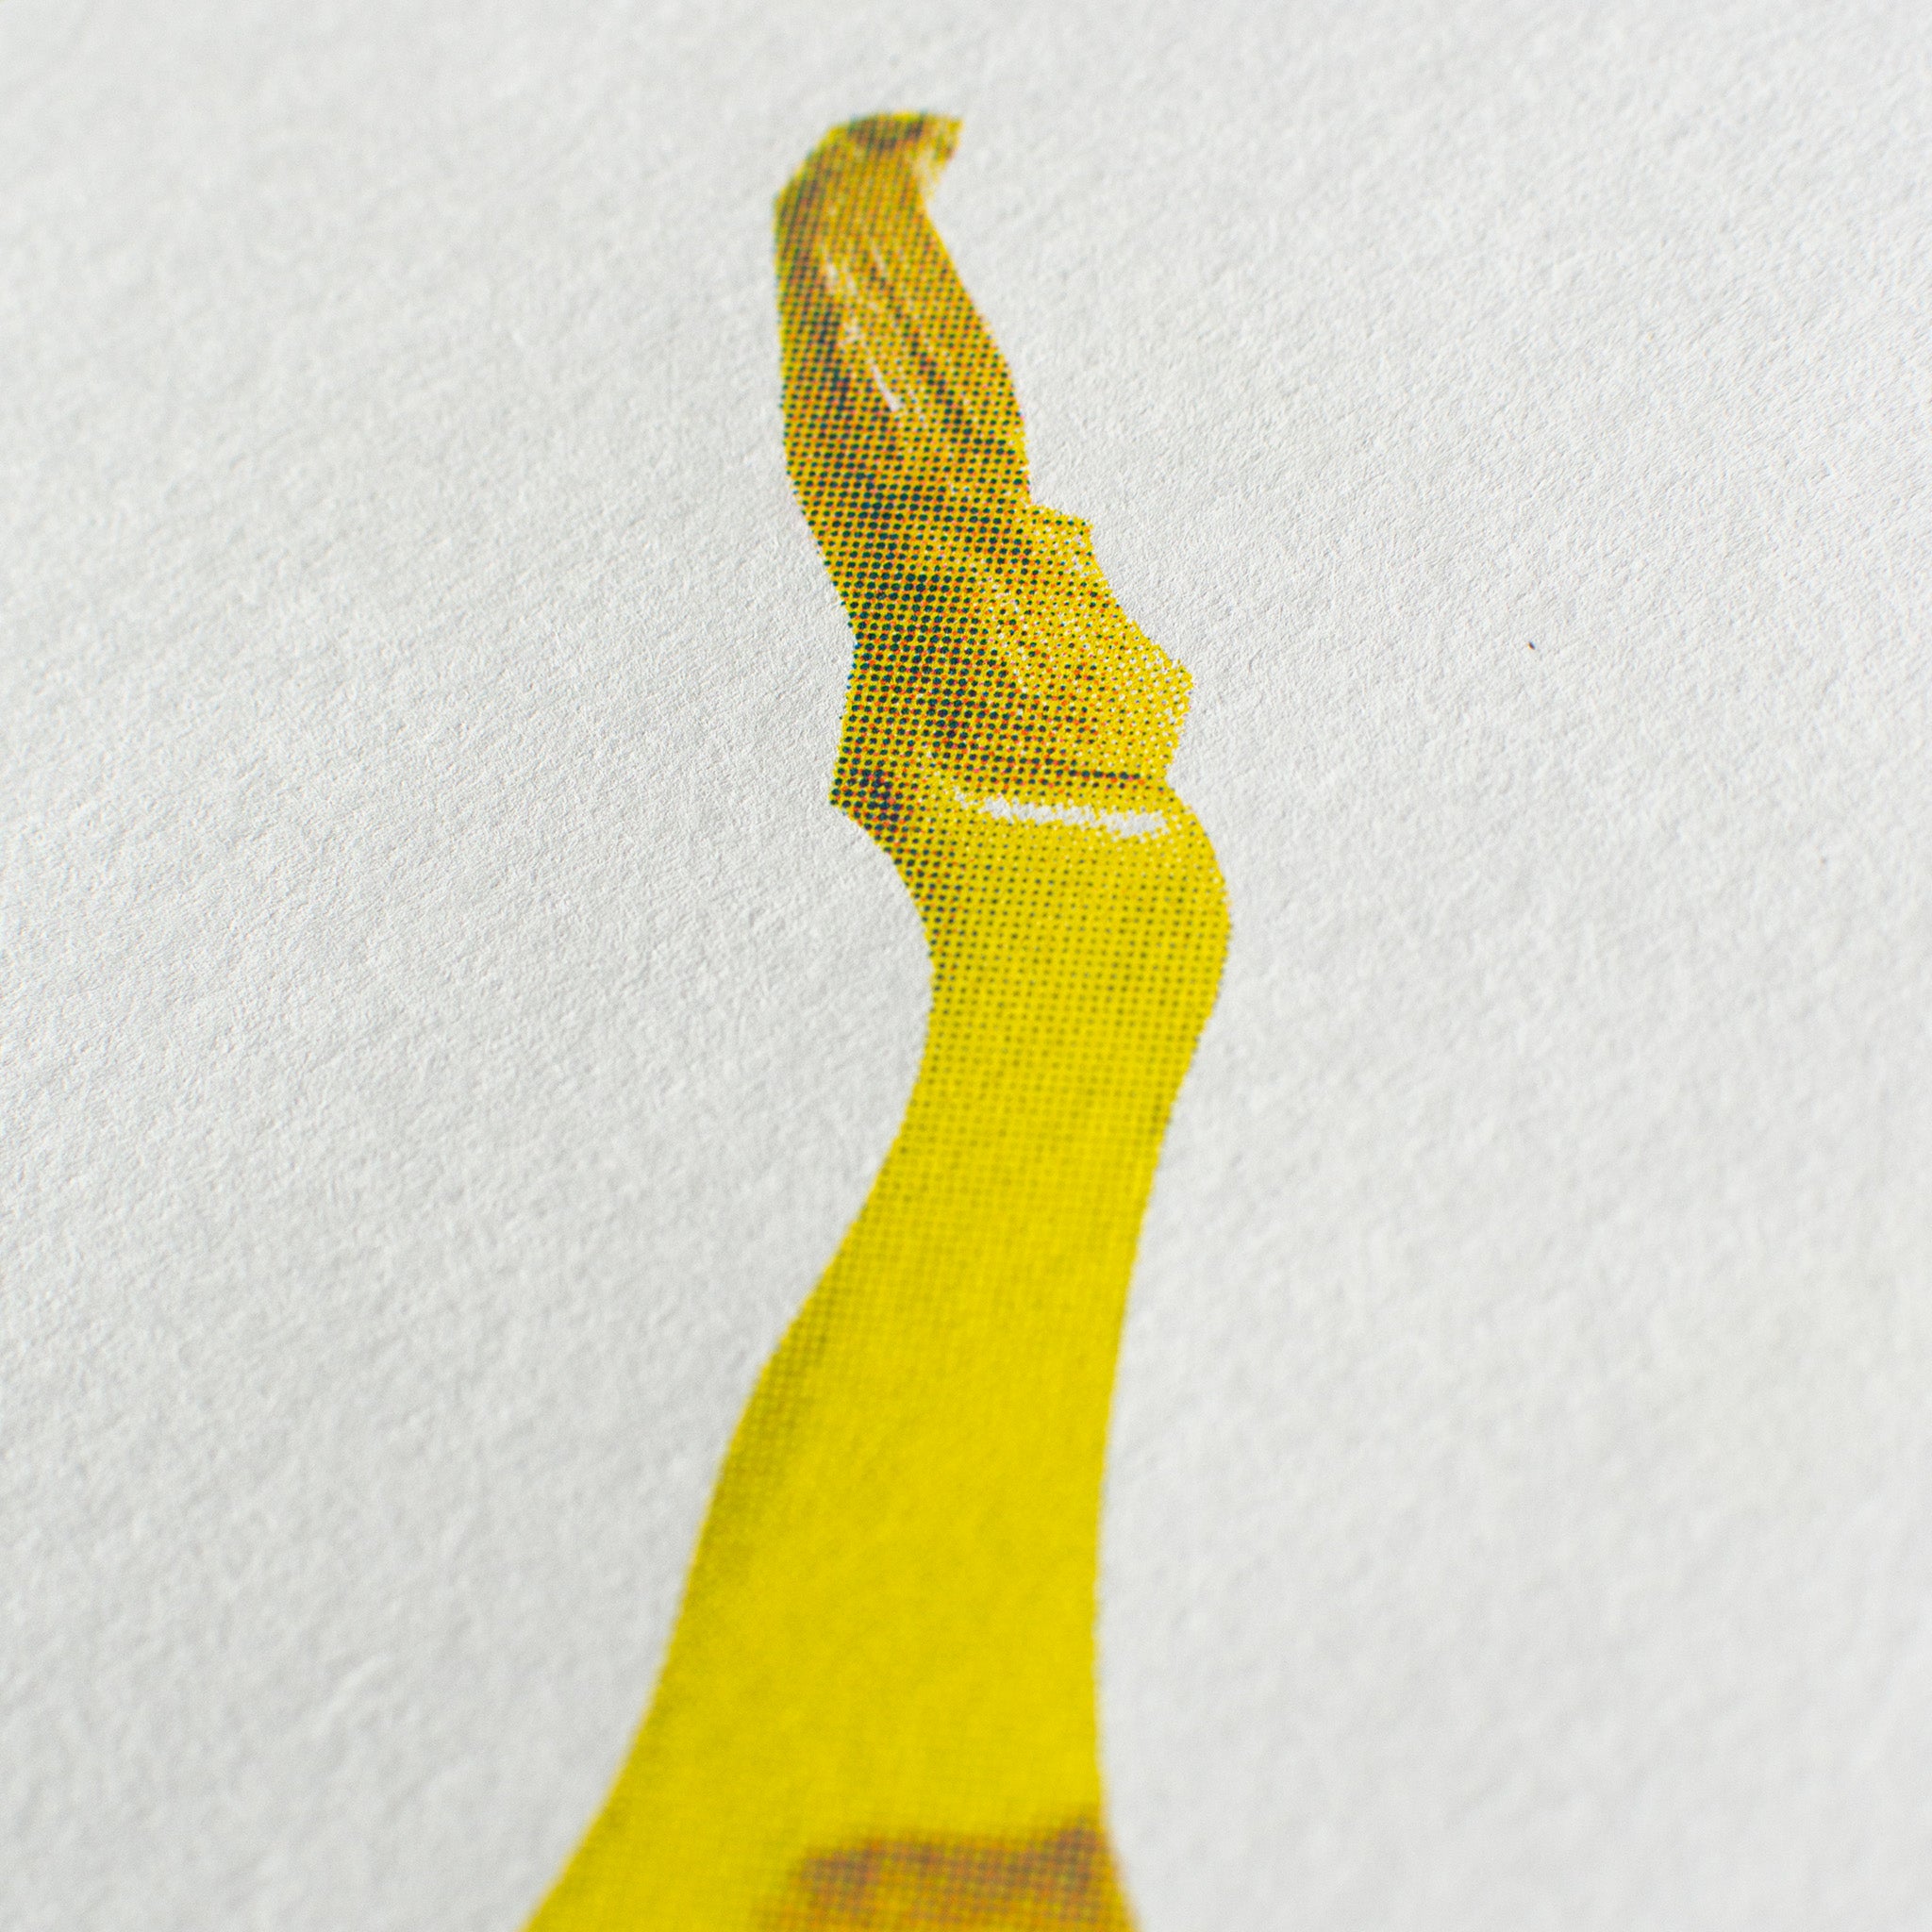 Risography Artprint Banana